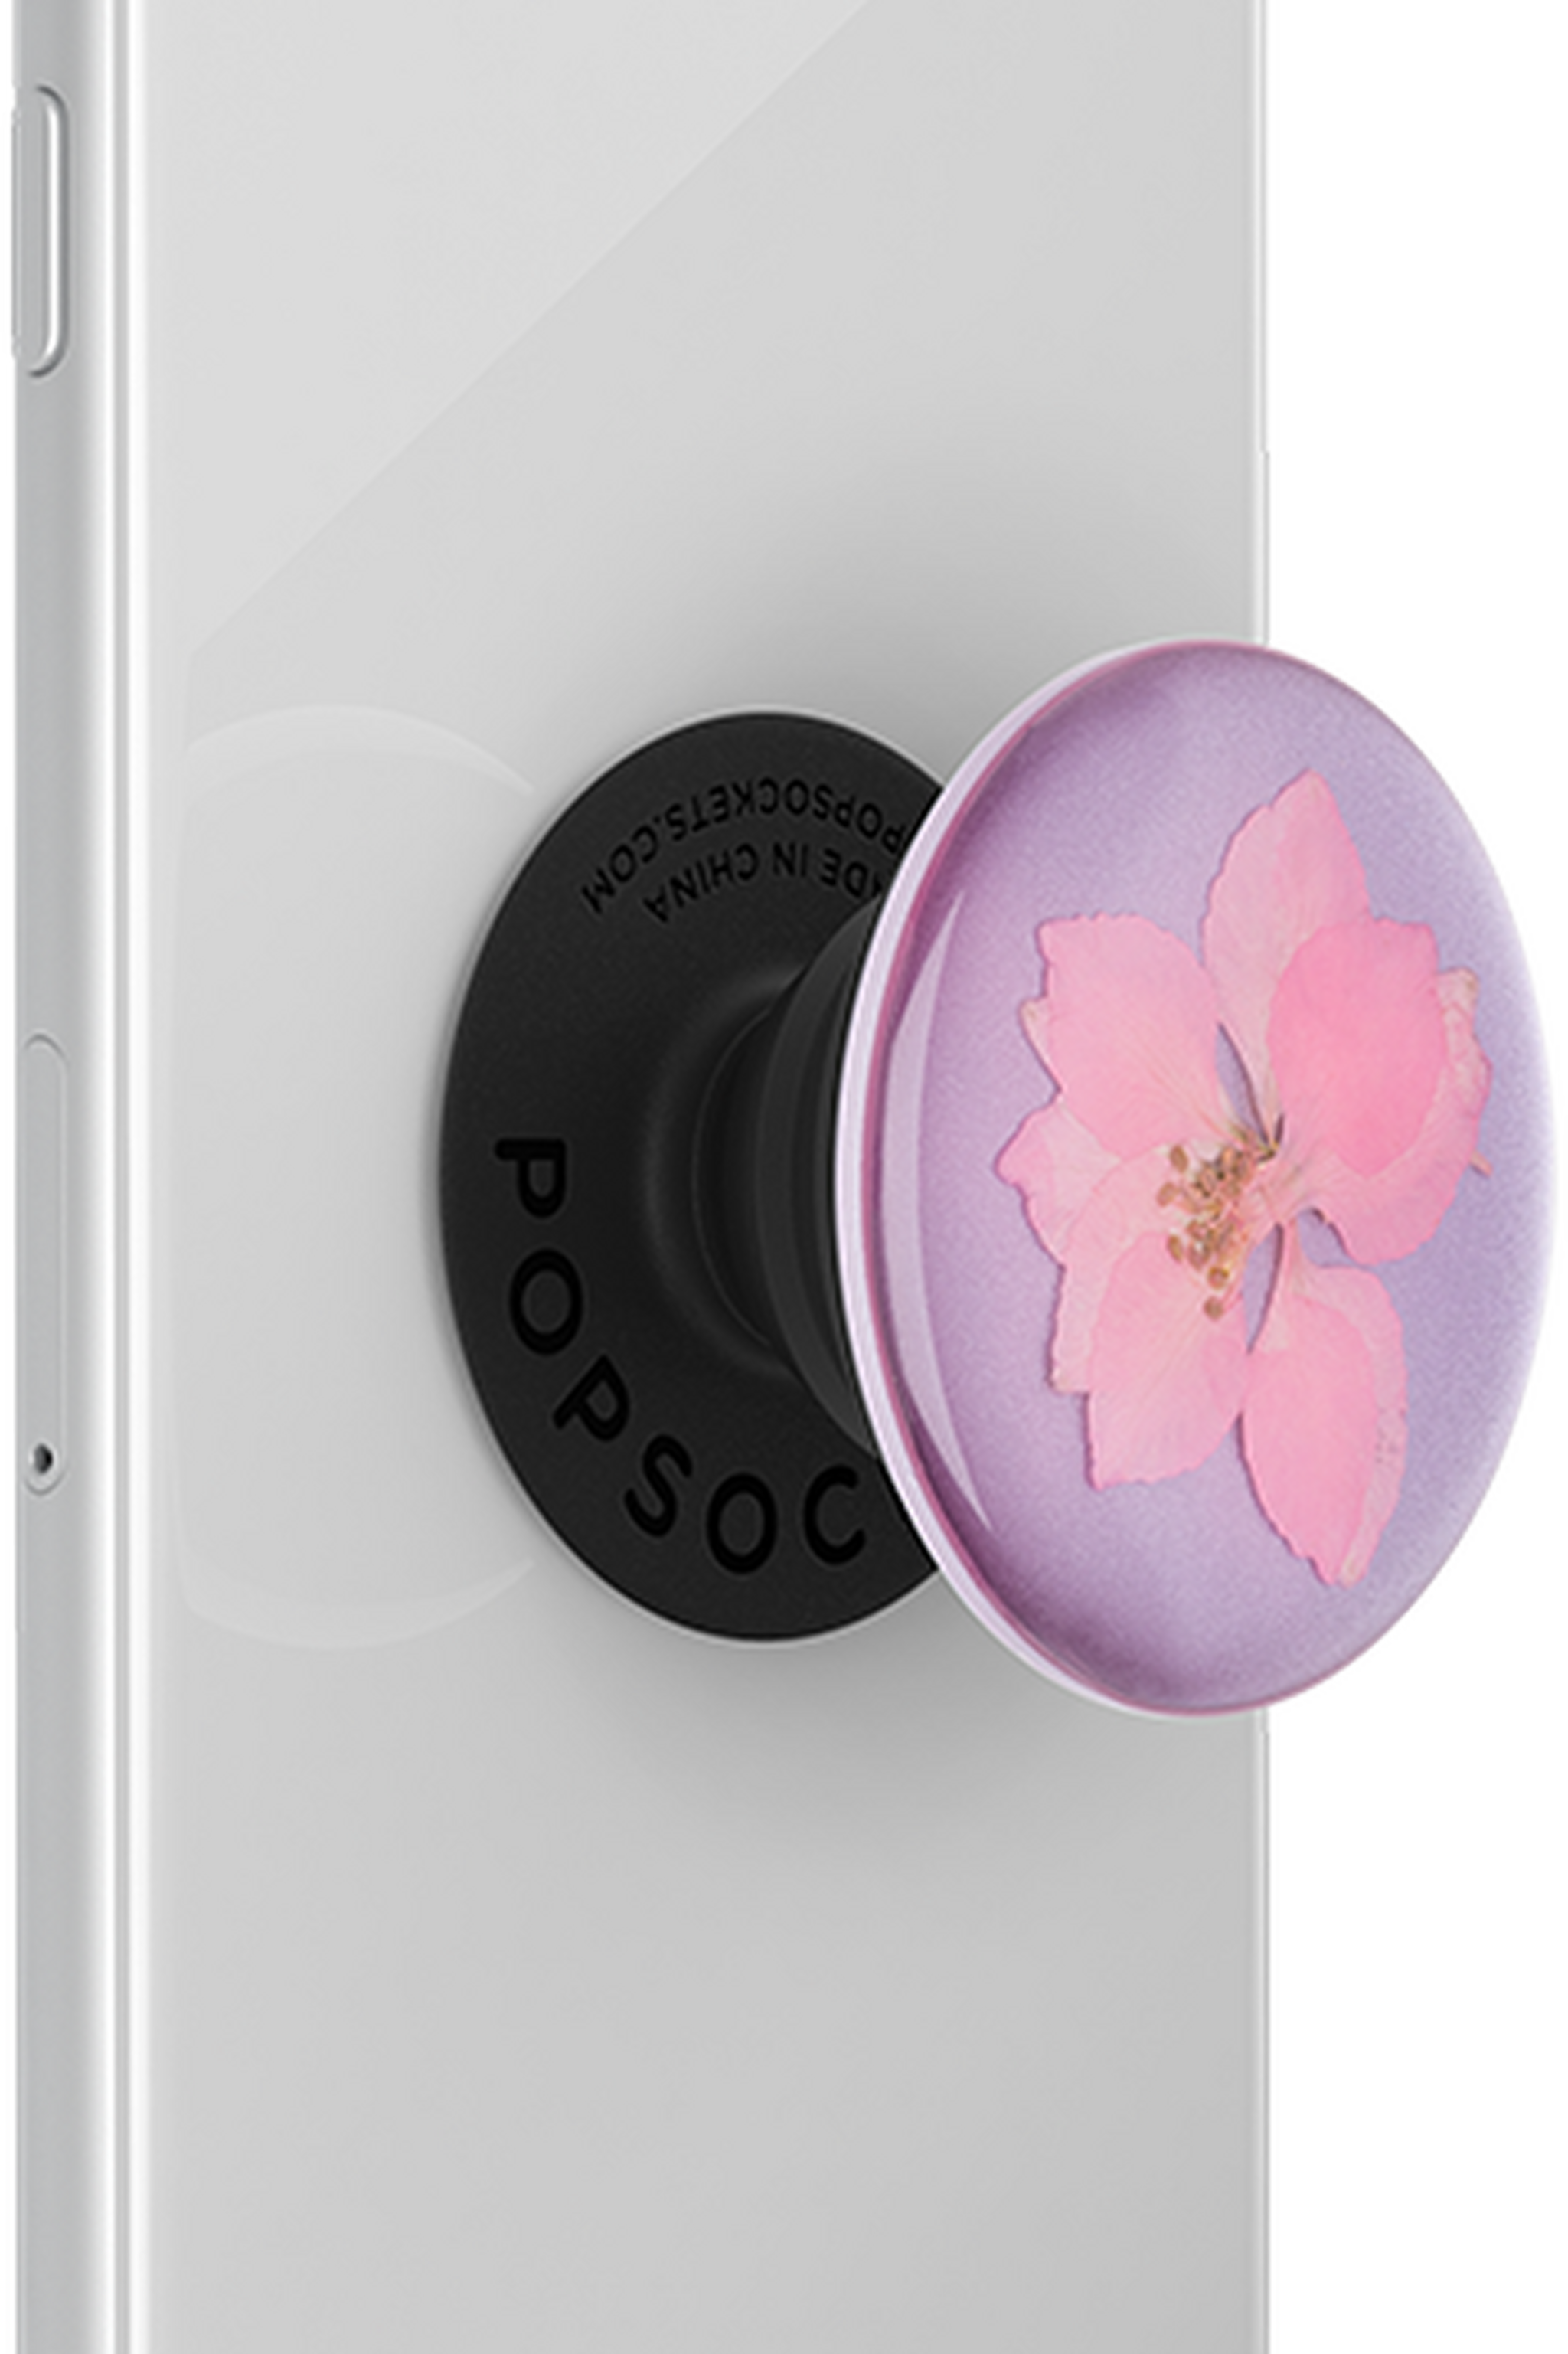 مقبض وحامل لاصق للهواتف الذكية والأجهزة اللوحية من بوب سوكيت(801238)  –  زهرة دلفينيوم الوردي